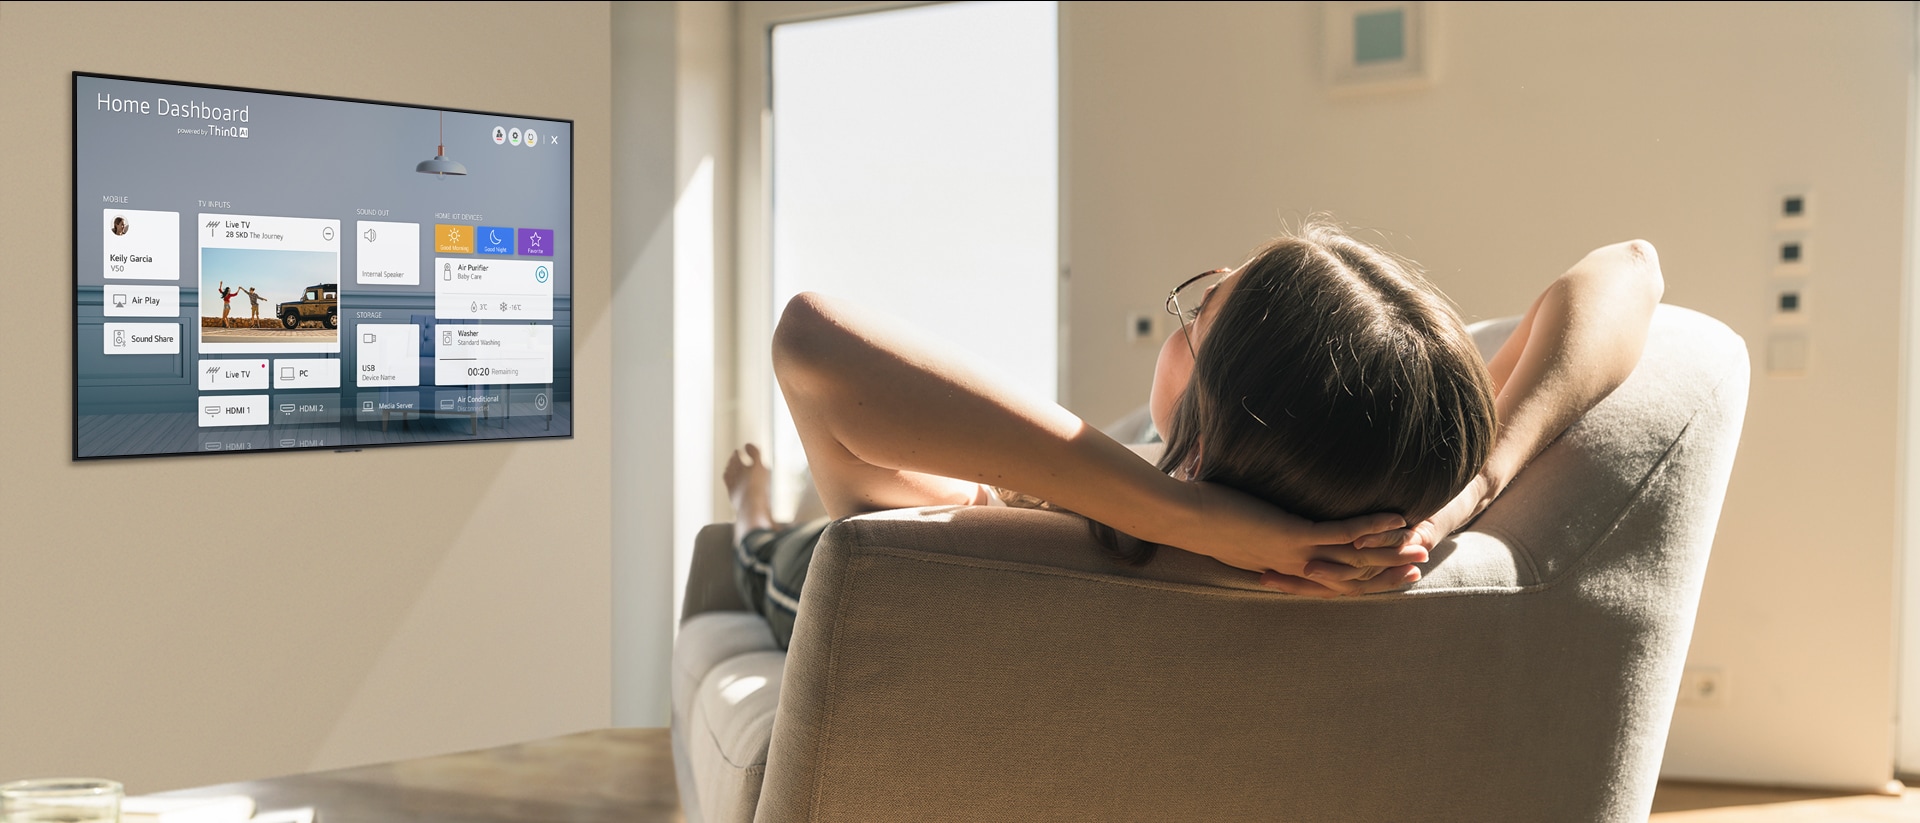 Kvinde ligger på en sofa og siger til tv’et, at det skal sænke temperaturen, mens Start Dashboard vises på tv-skærmen